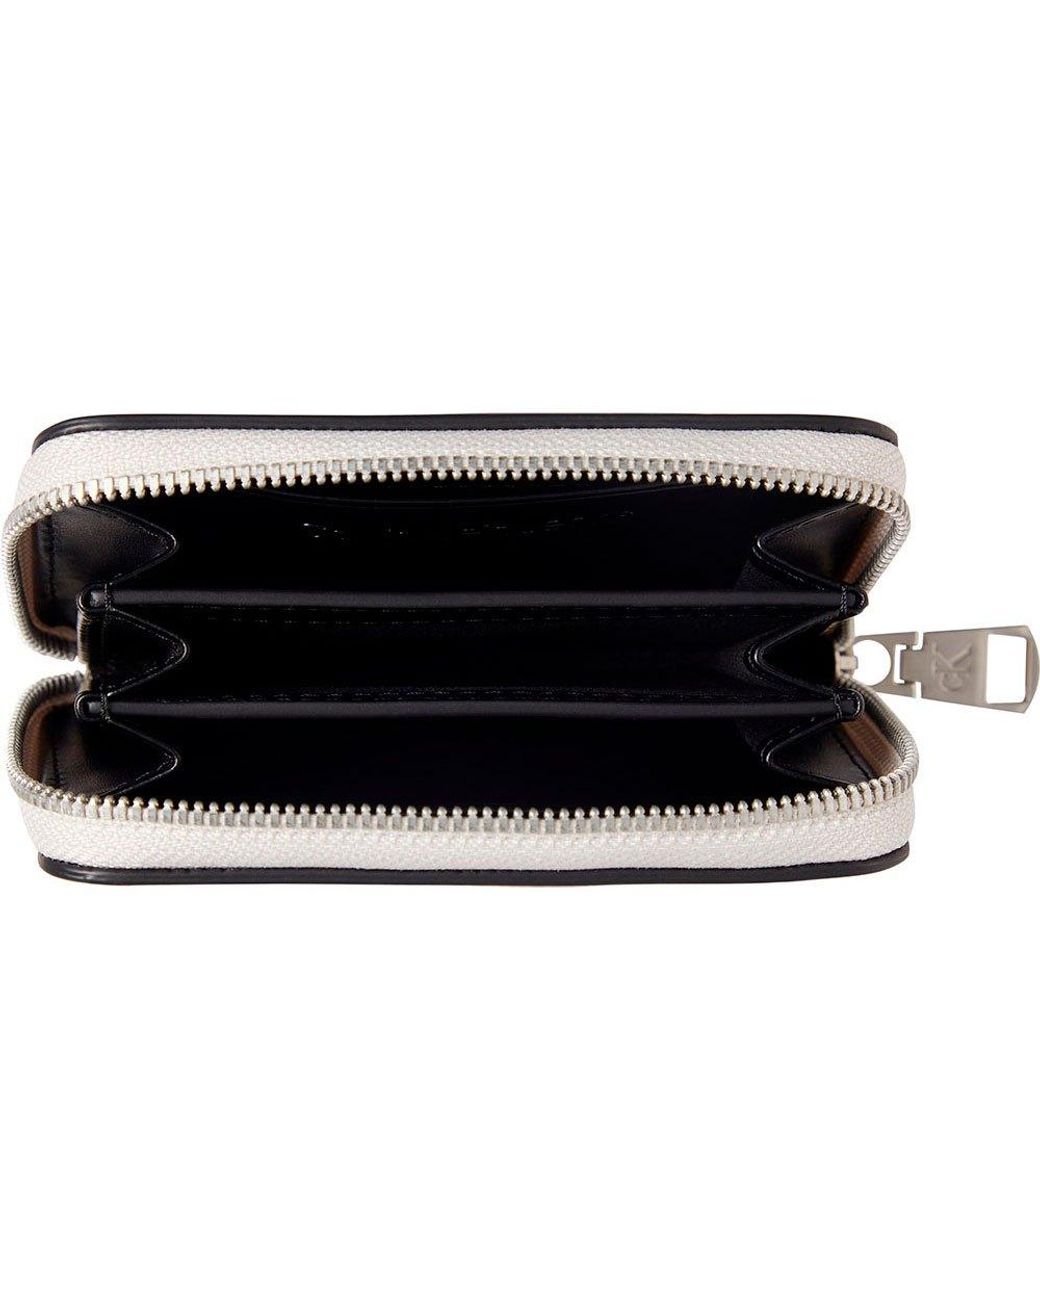 Calvin Klein Saffiano Continental Zip Around Black Wallet Wristlet